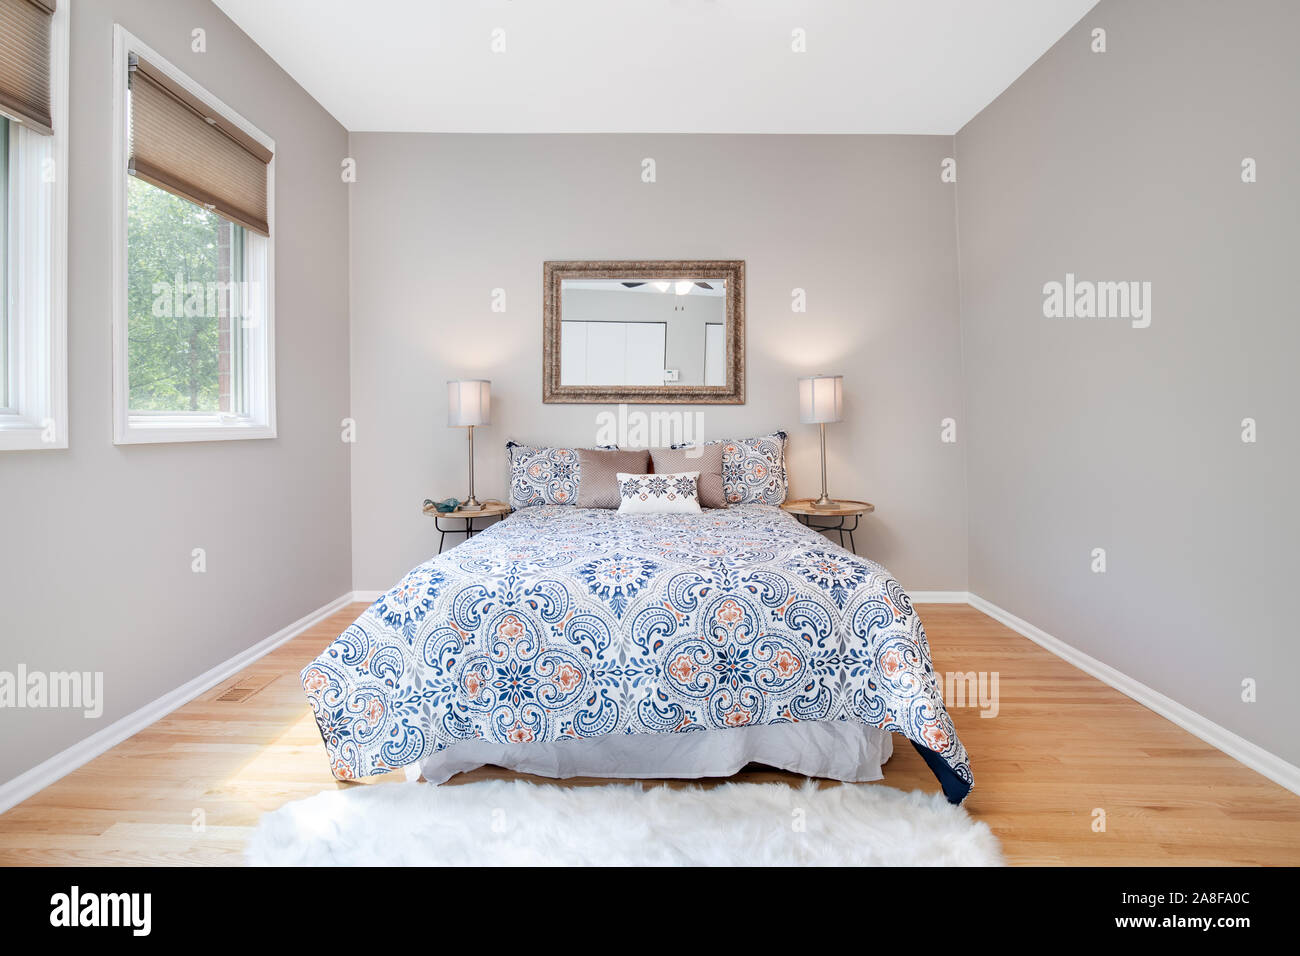 Ein Bett im Schlafzimmer zu einer Residenz zentriert mit zwei Lampen auf dem Nachttisch und ein Spiegel hängt über dem Bett. Stockfoto